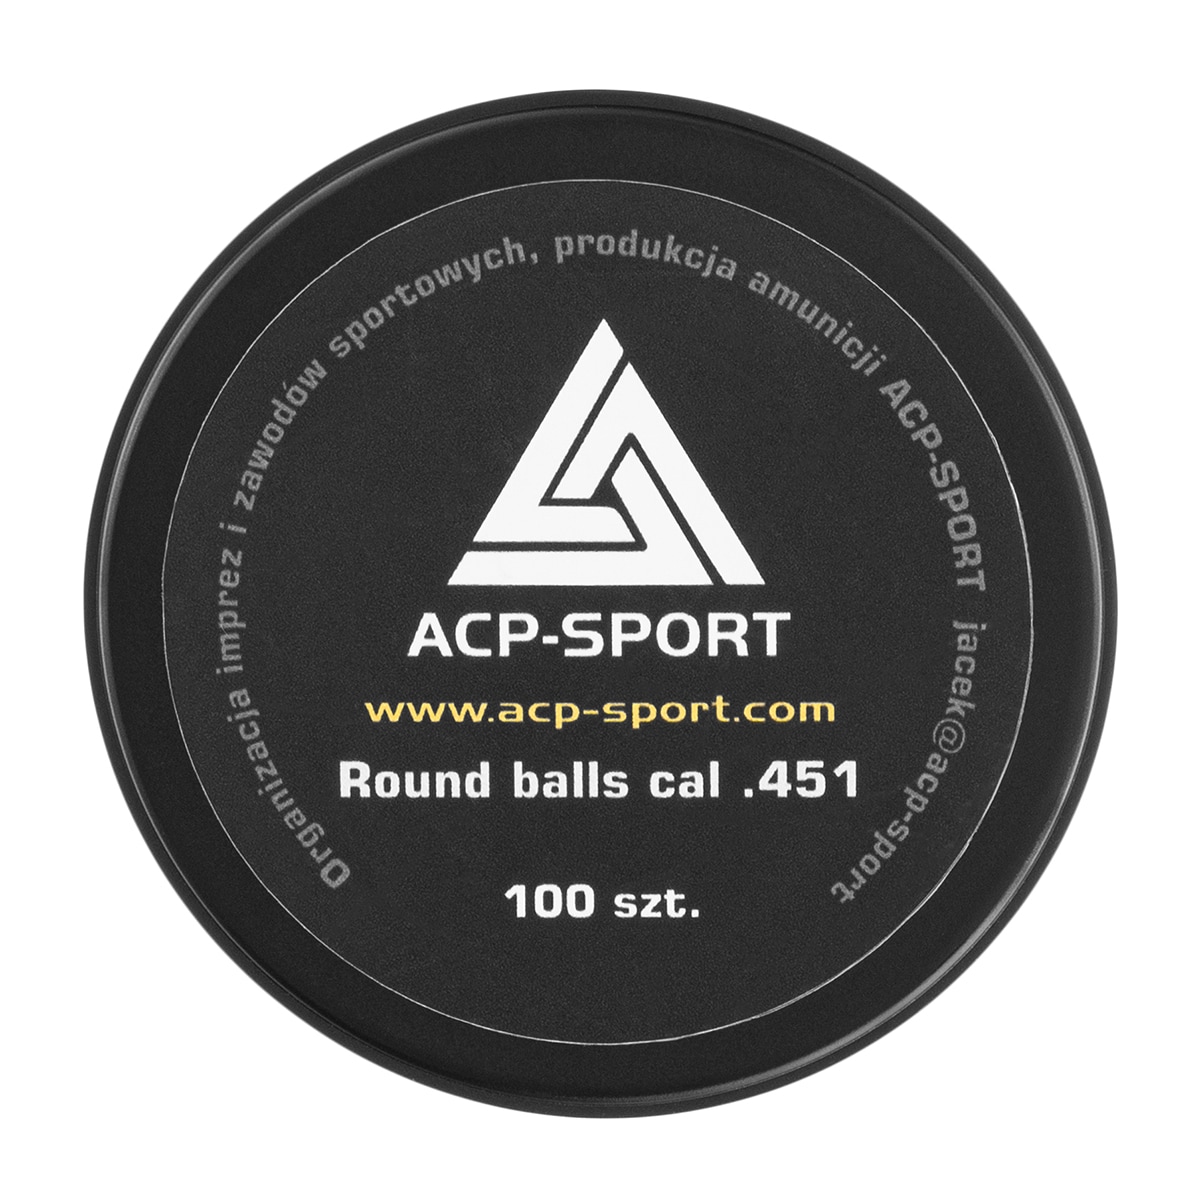 Kule ołowiane ACP-Sport kaliber .451 - 100 szt.